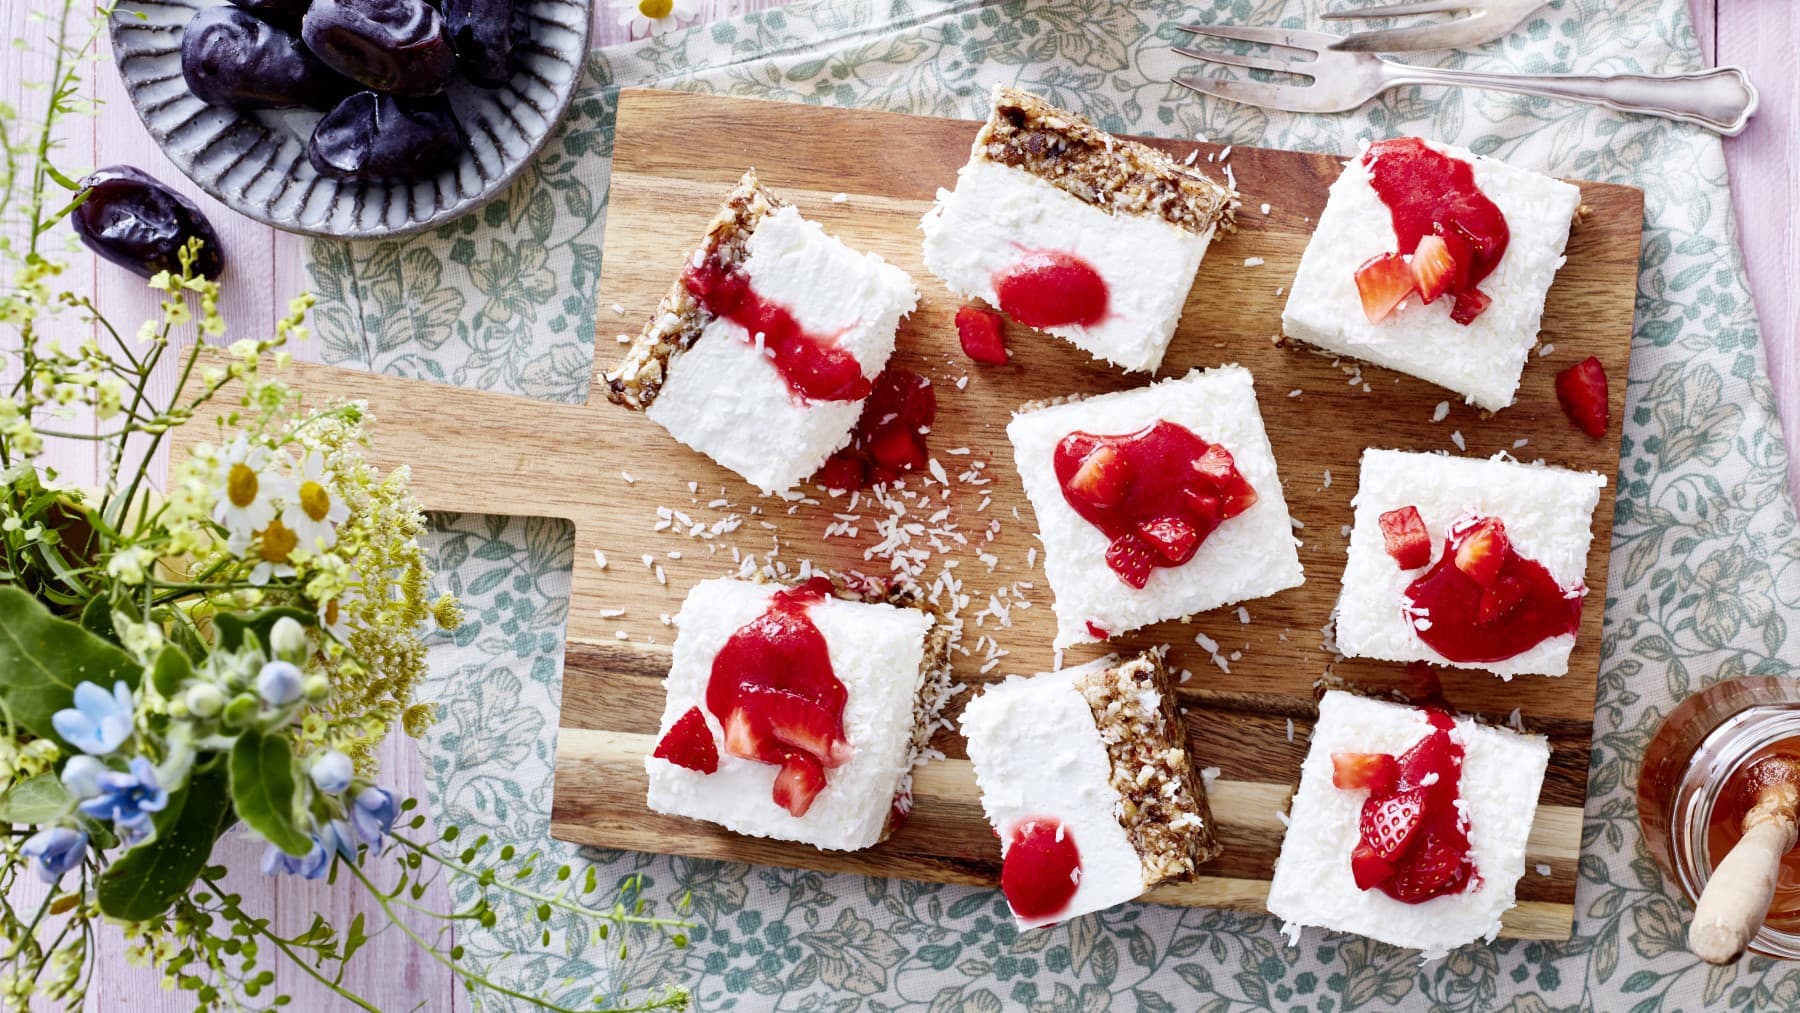 8 Stücke Dattel-Joghurt-Cheesecake auf einem hölzernen Schneidebrett auf einem Geschirrtuch. Rechts unten Honig, links unten Blumen. Links oben eine kleine Schüssel mit Datteln und rechts oben zwei Dessertgabeln.